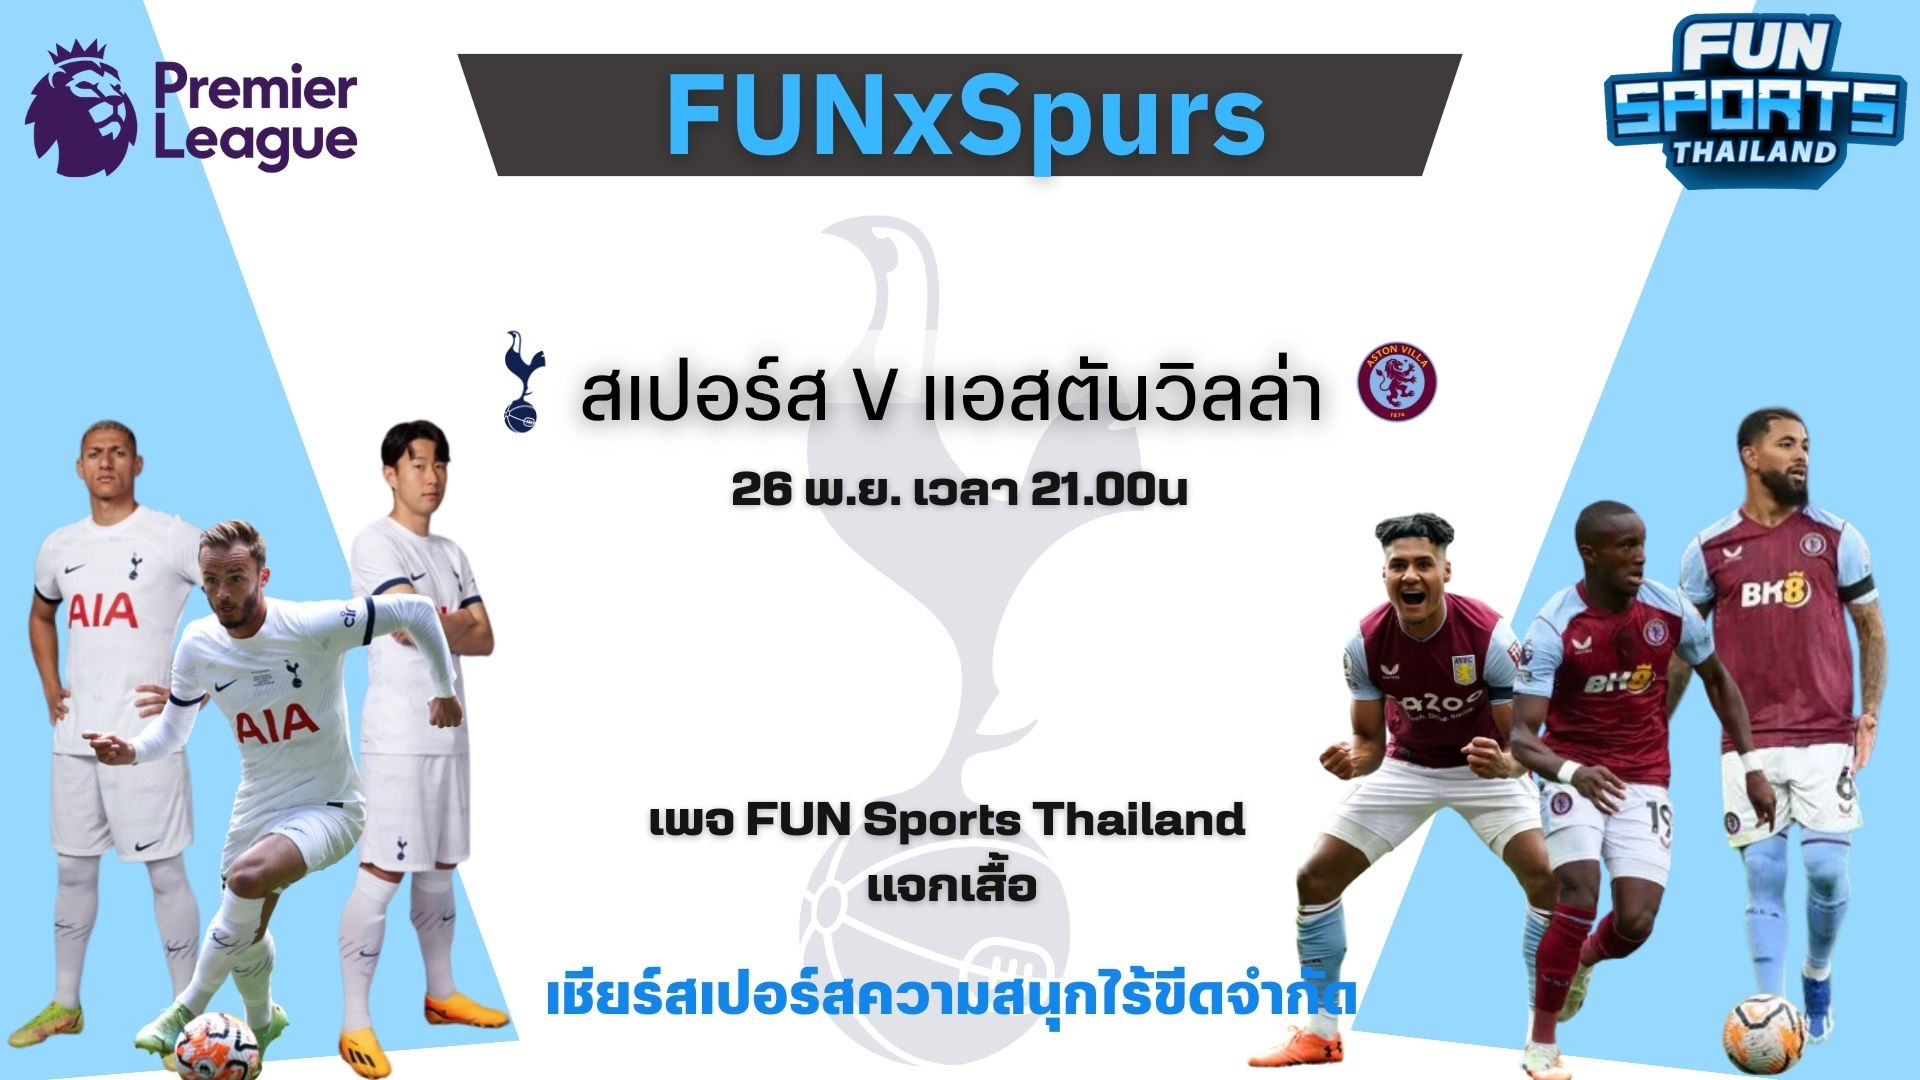 ลุ้นของรางวัลเสื้อทีมสเปอร์สลิขสิทธิ์แท้ จำนวน 2 รางวัล ในกิจกรรมทายผลระหว่าง สเปอร์ส กับ แอสตัน วิลล่า วันที่ 26 พ.ย. นี้ เวลา 21.00 น. ในเพจ FUN Sports Thailand